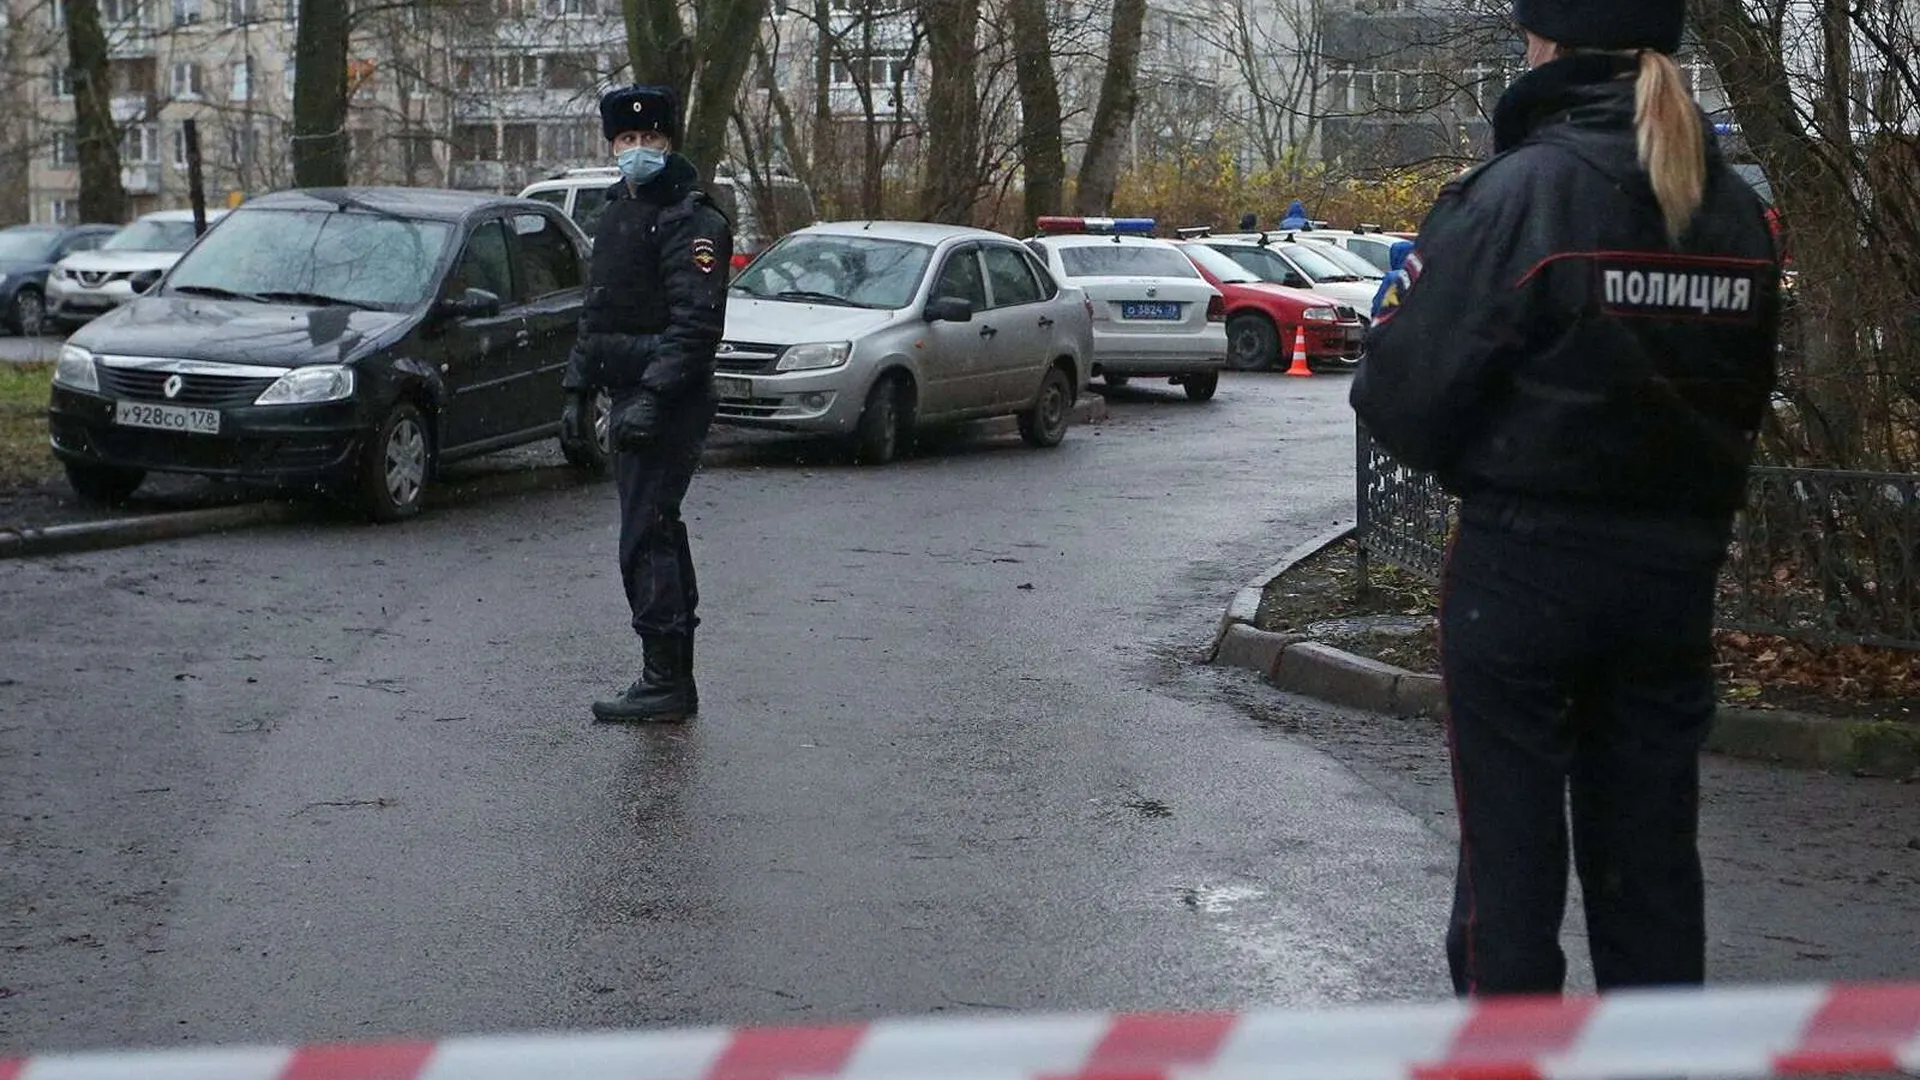 Доследственную проверку начали в Петербурге после захвата детей в заложники